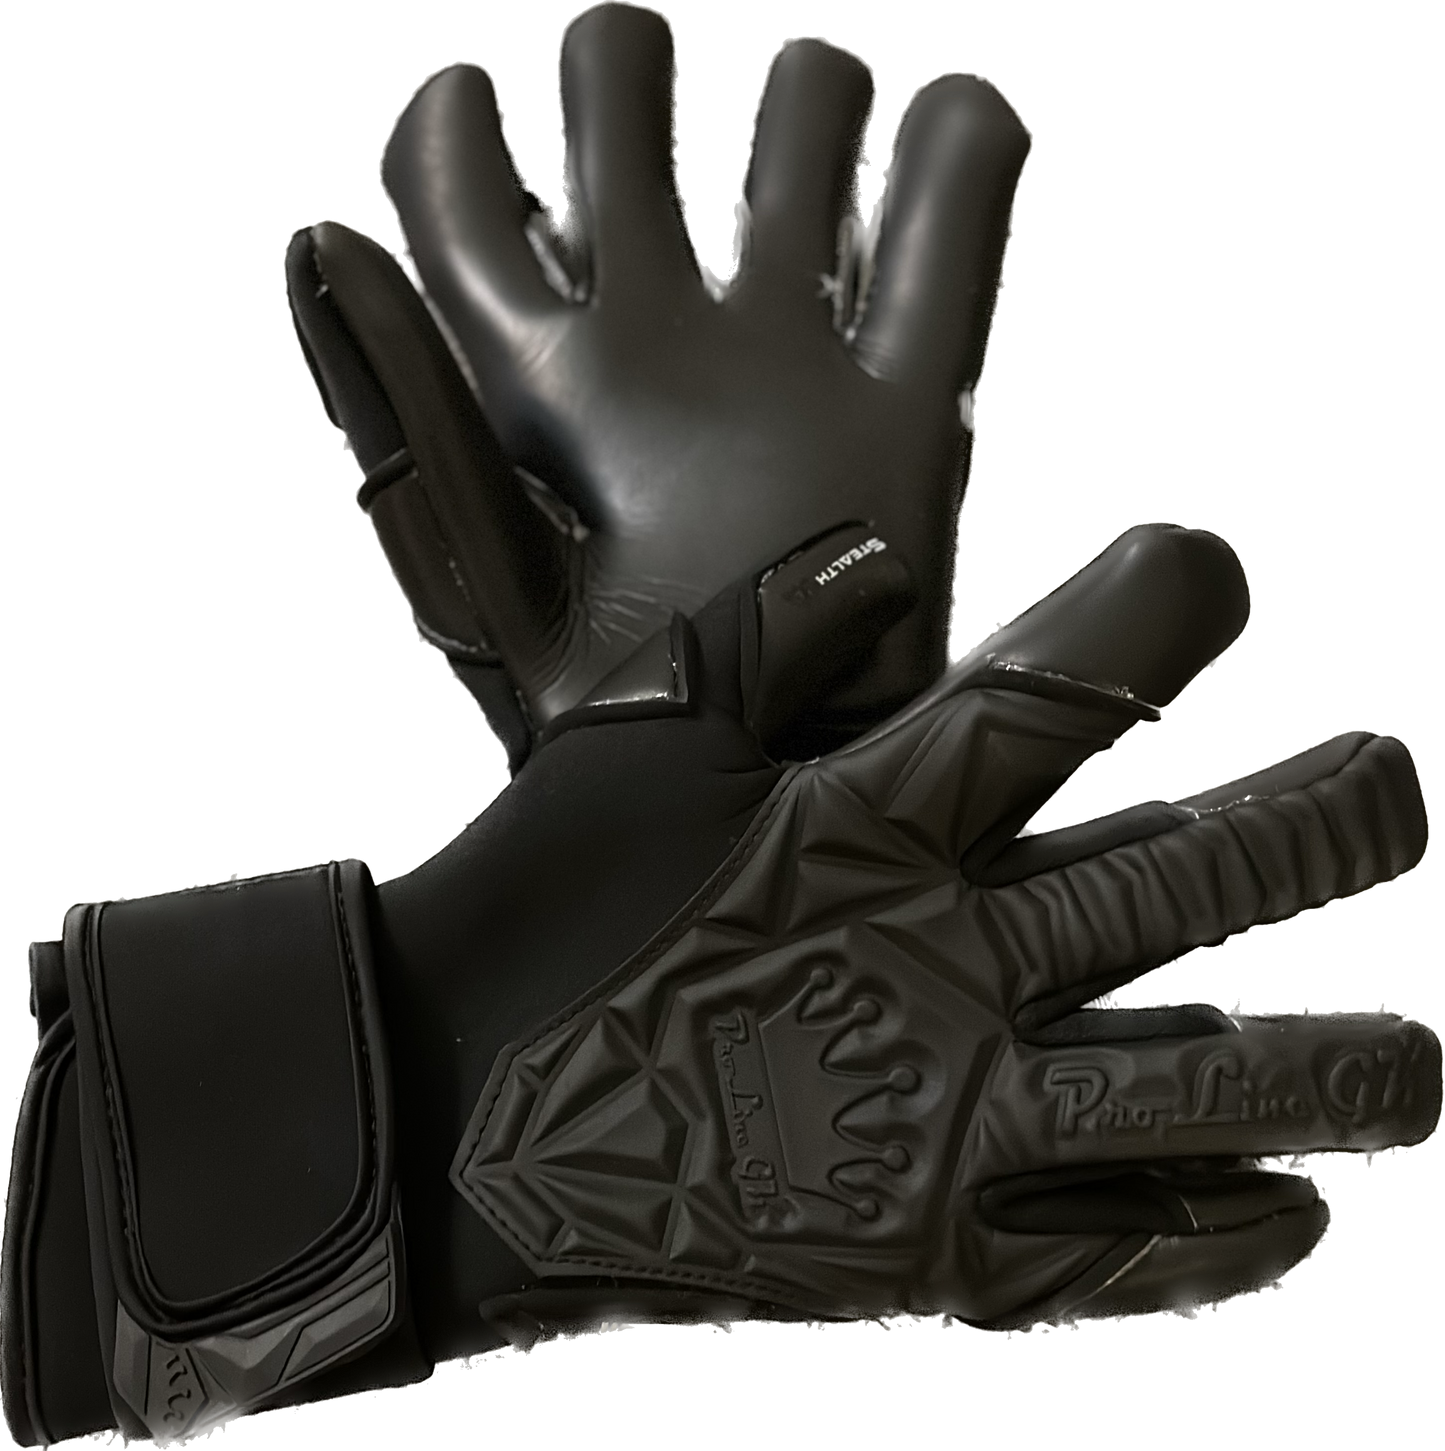 ProLineGK Gloves. Stealth